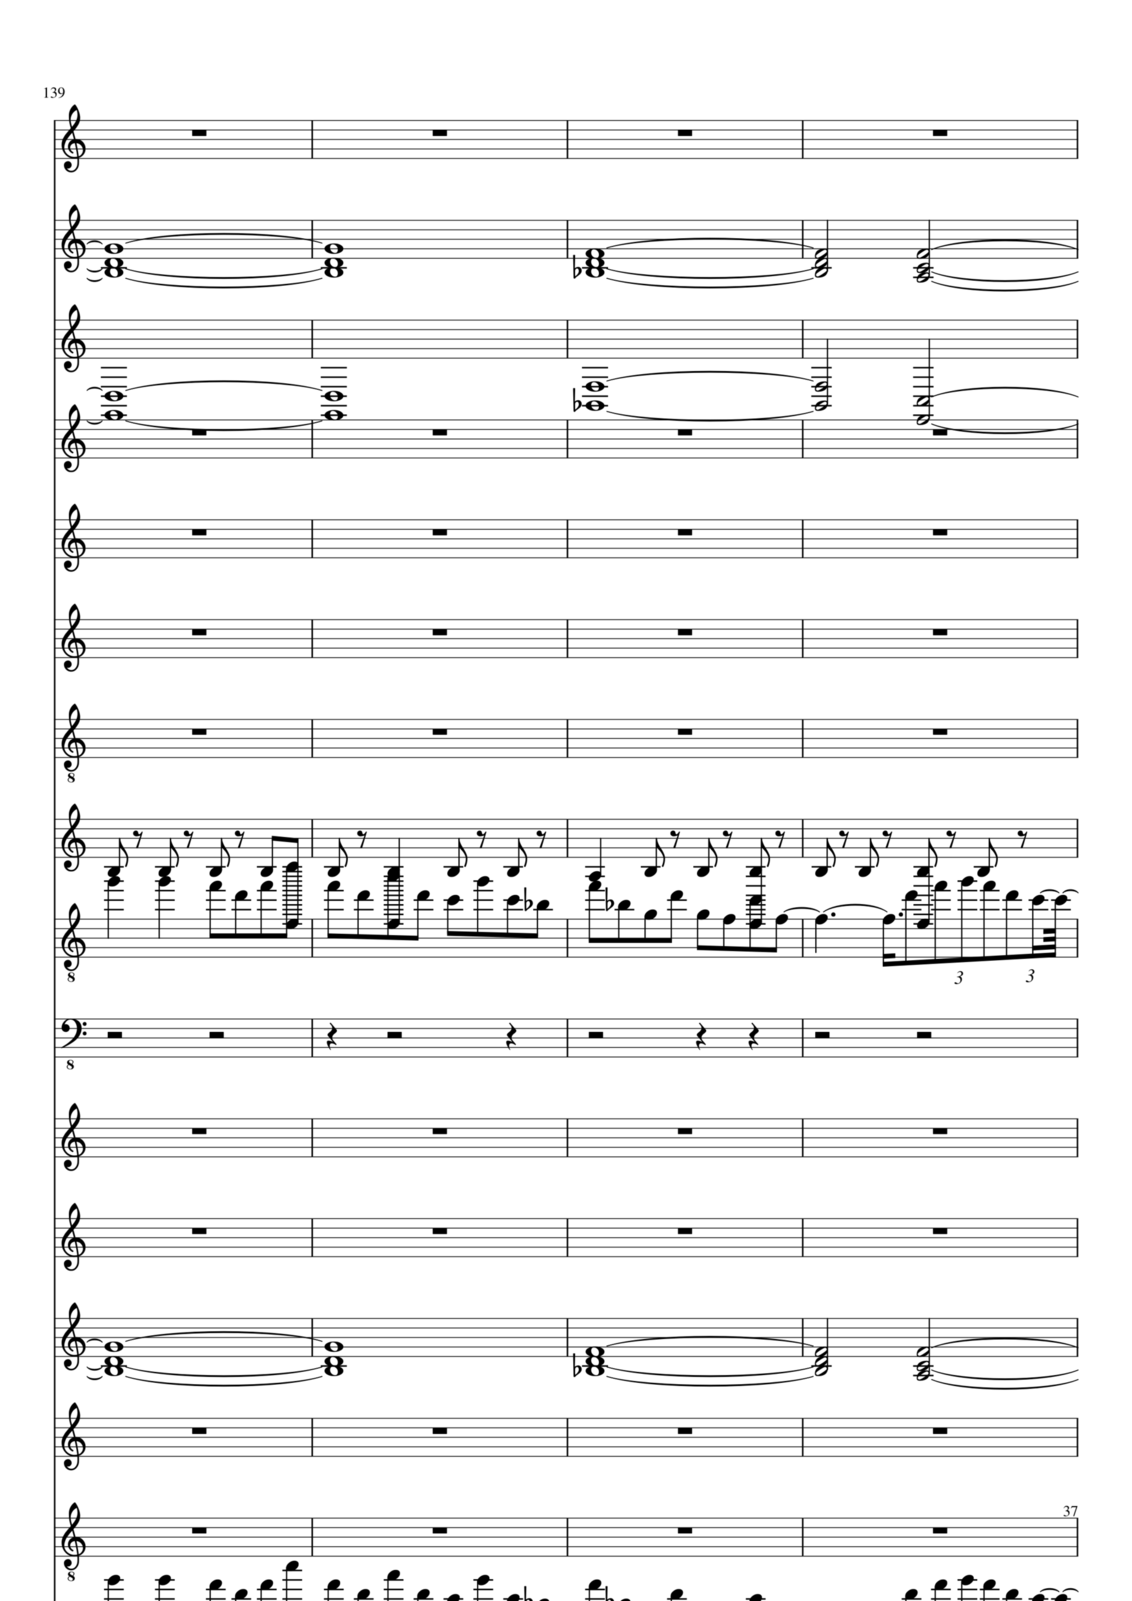 Vechnaya prizrachnaya vstrechnaya slide, Image 23